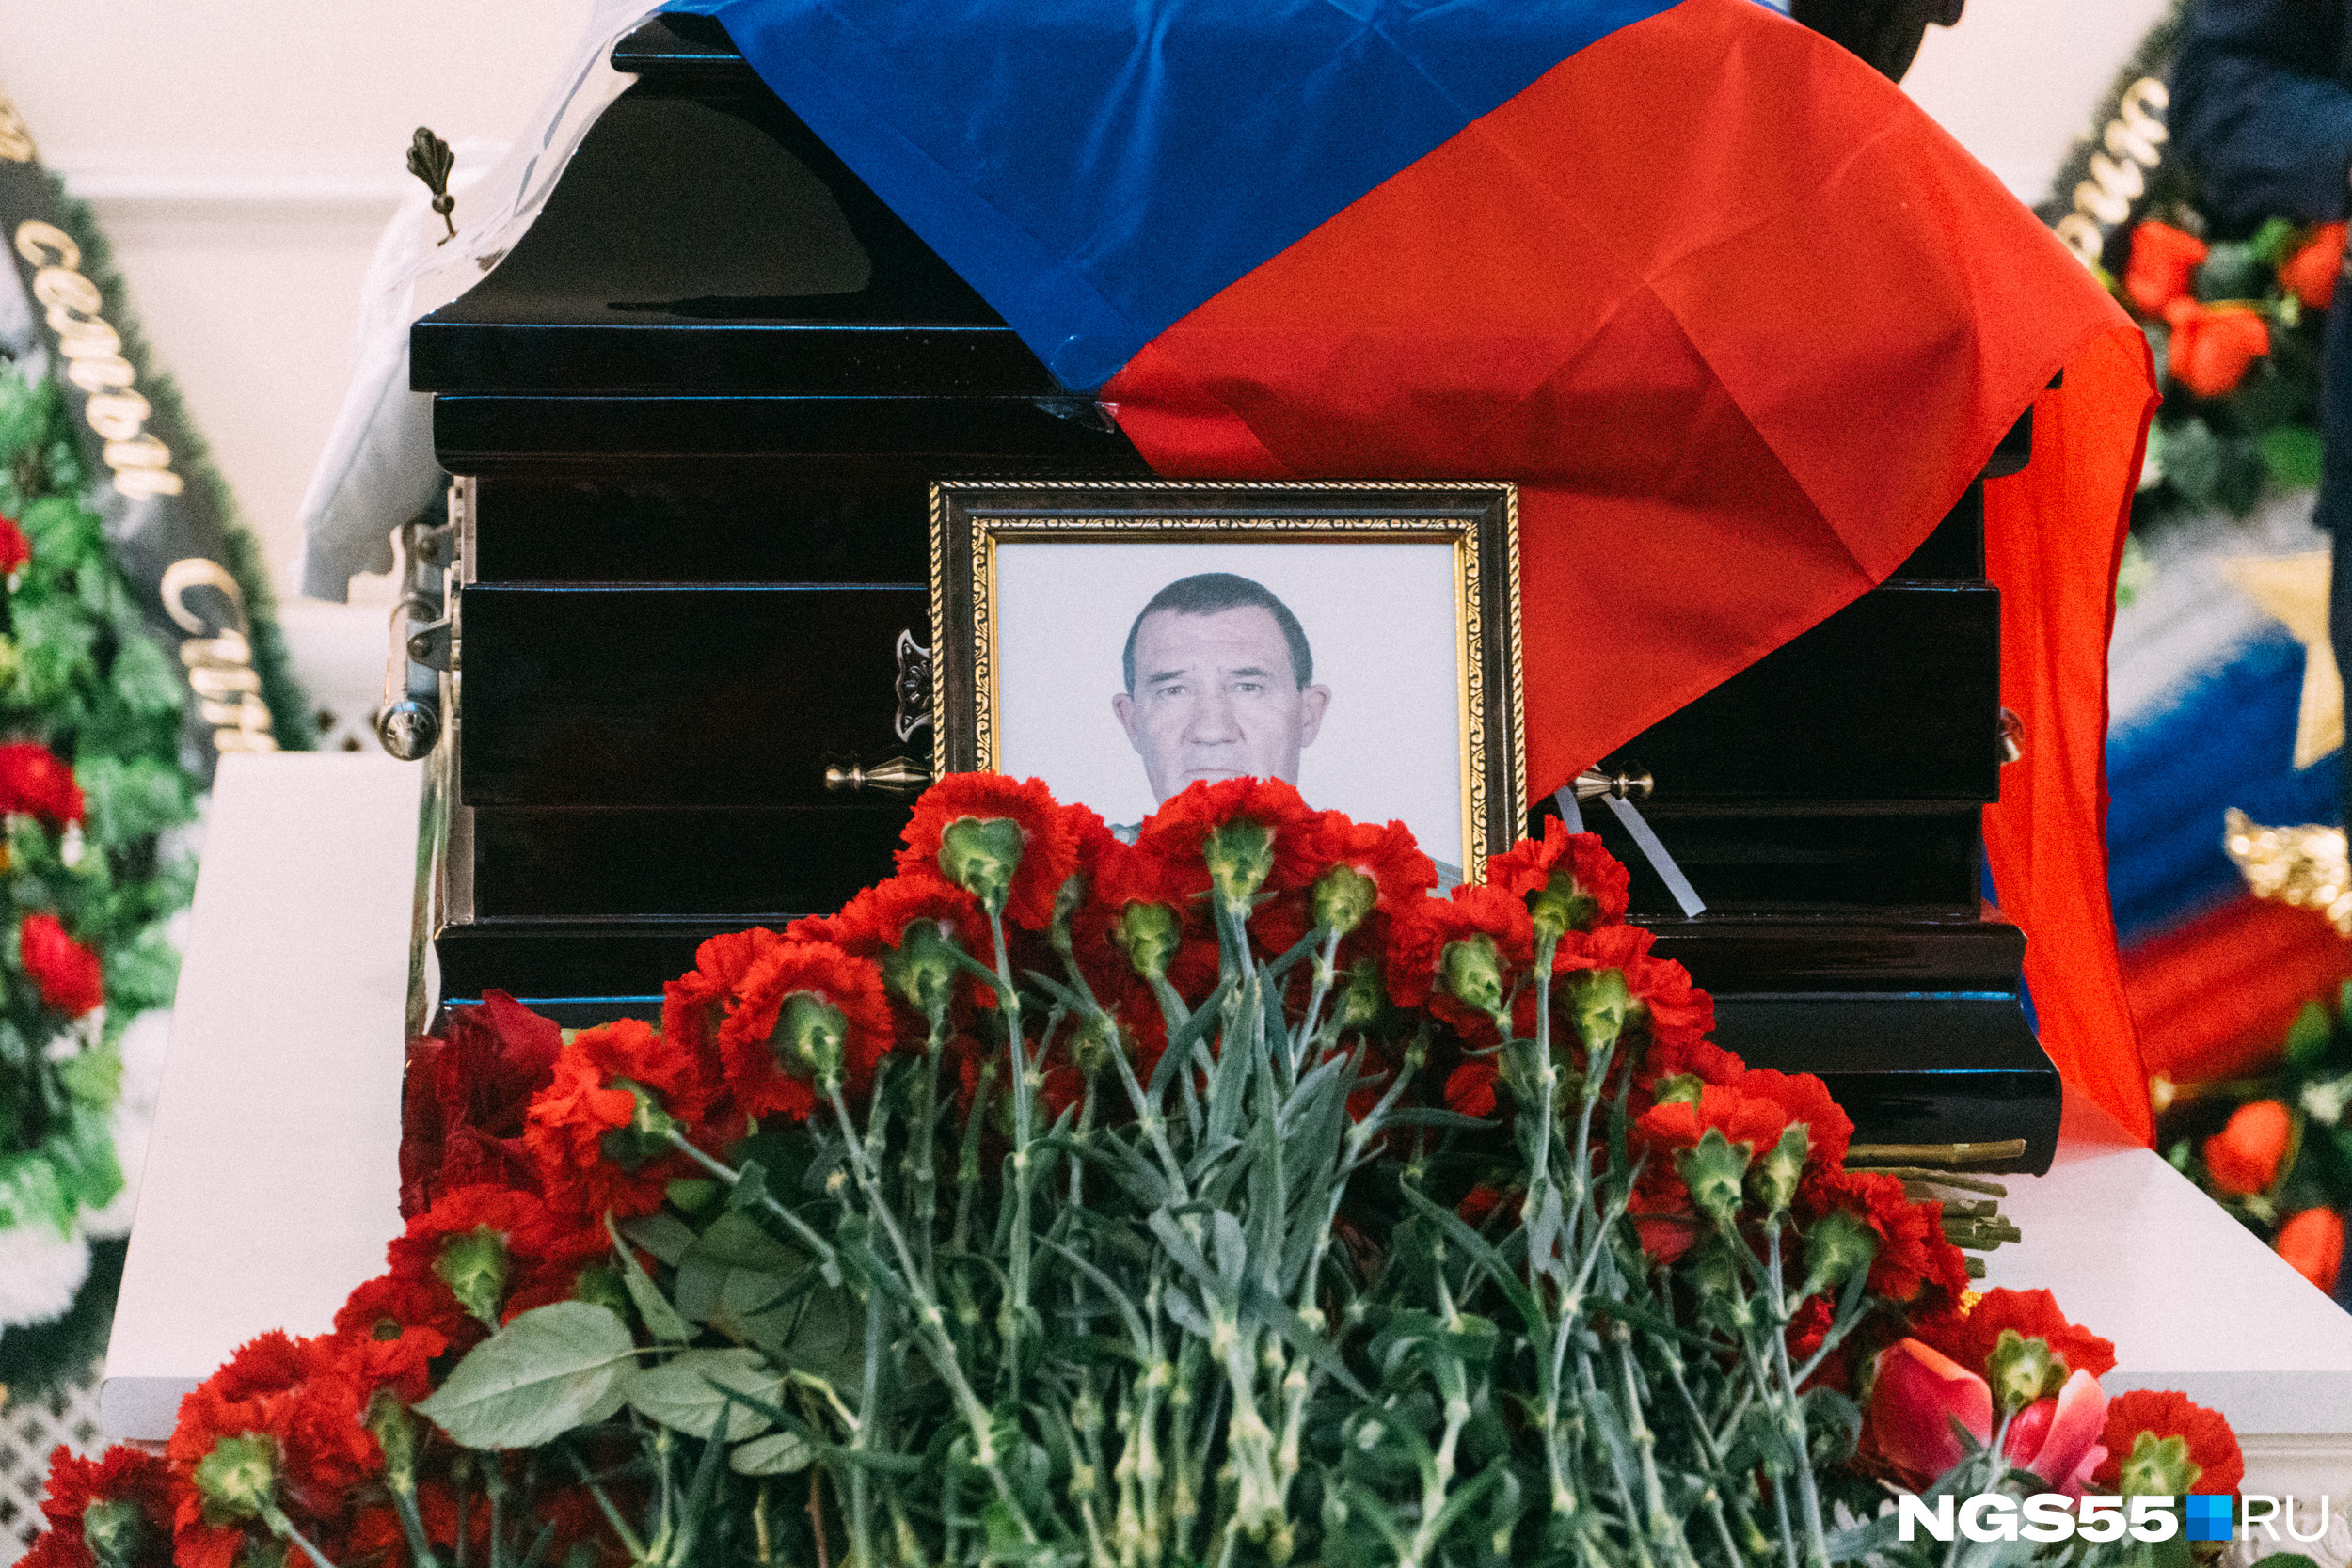 Похоронили погибших на украине. В Омске похоронили погибших на Украине.